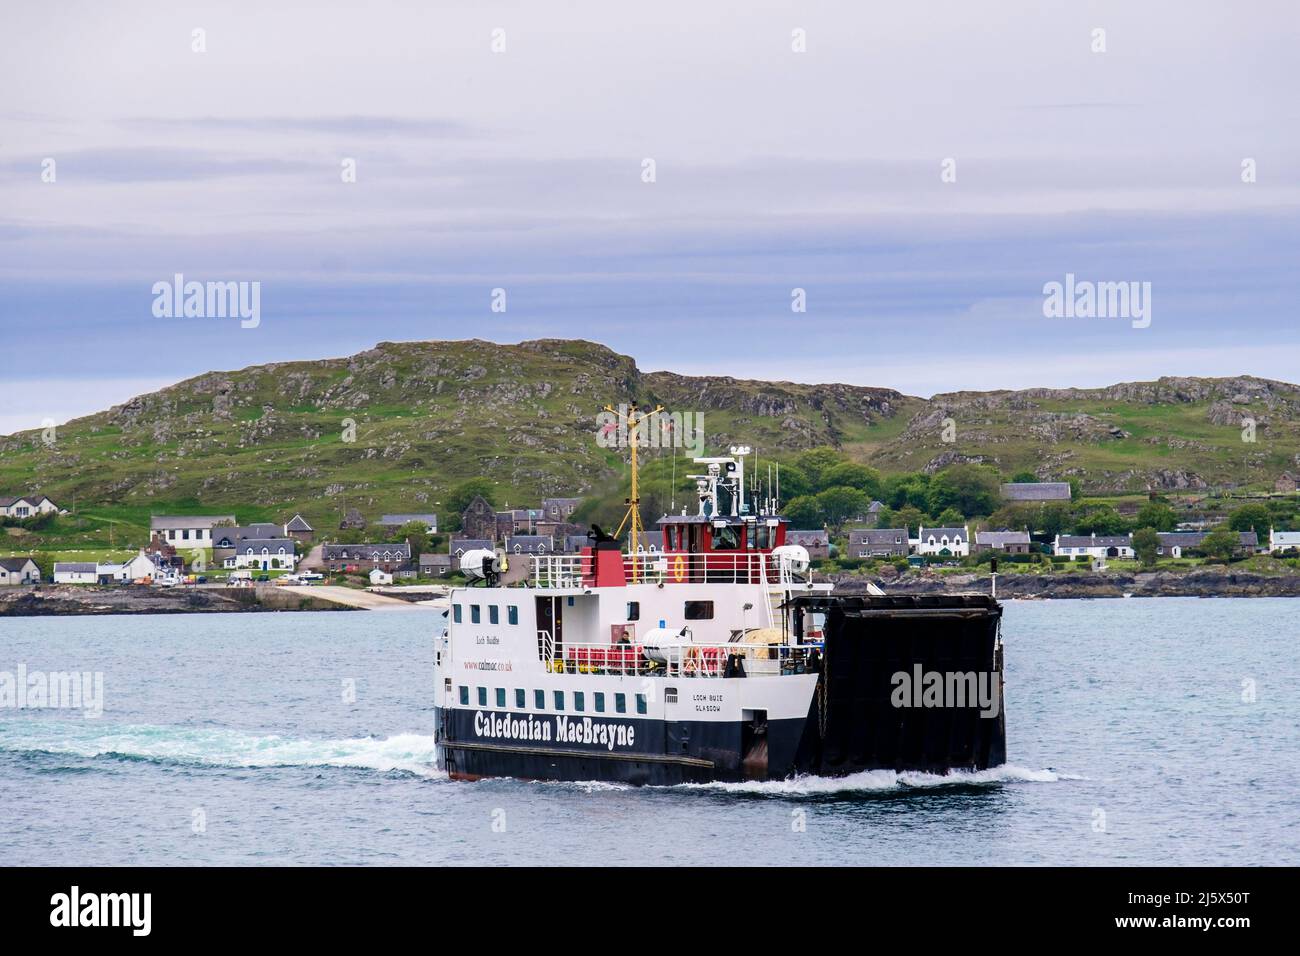 Ferry Caledoniano MacBrayne que navega desde la isla de Iona hasta Fionnphort, Isla de Mull, Argyll y Bute, Inner Hebrides, Western Isles, Escocia, Reino Unido, Gran Bretaña Foto de stock